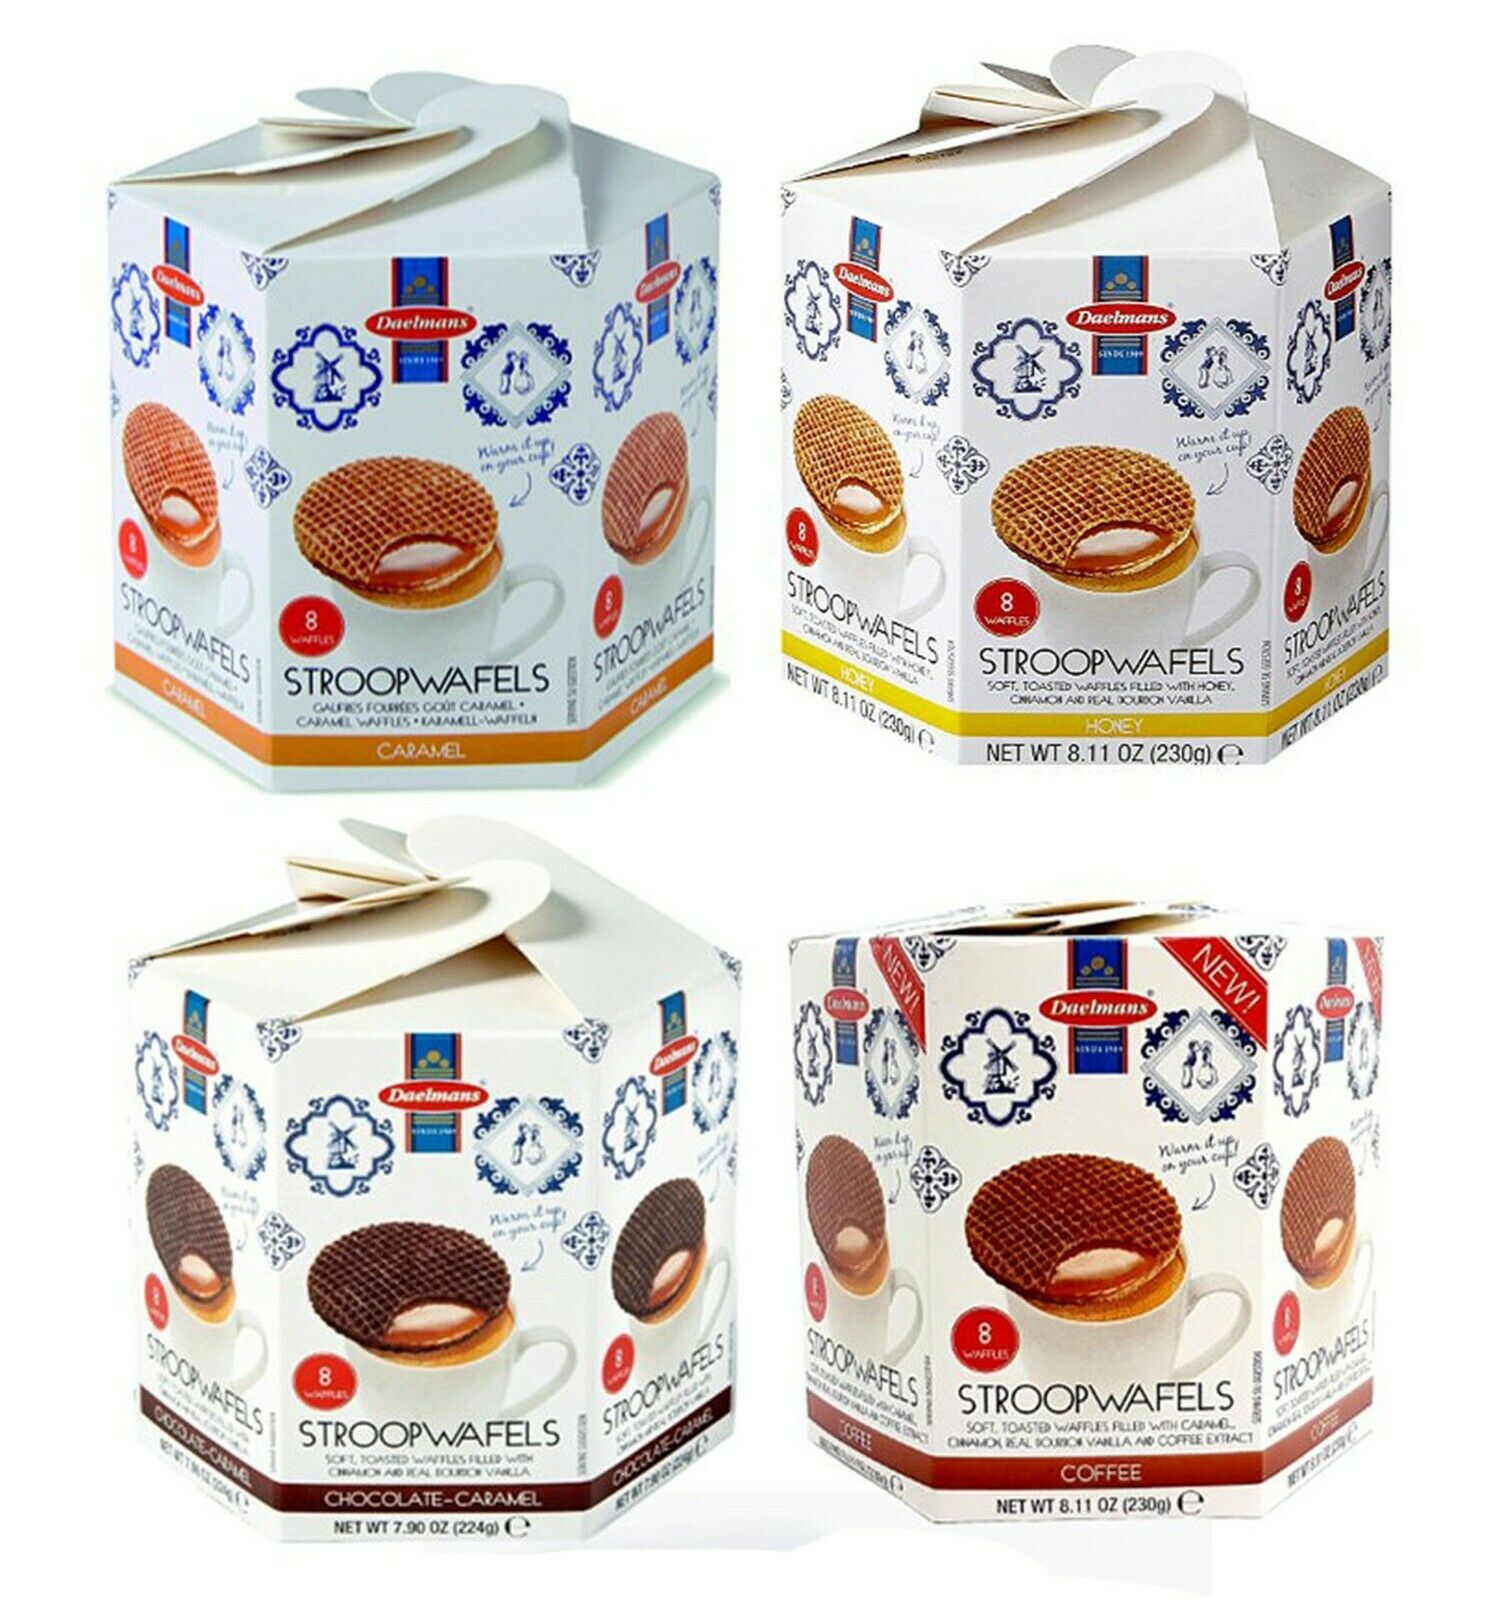 Daelmans Dutch Stroopwafels Wafers Caramel, Honey, Chocolate, Or Coffee 8.1 Oz.